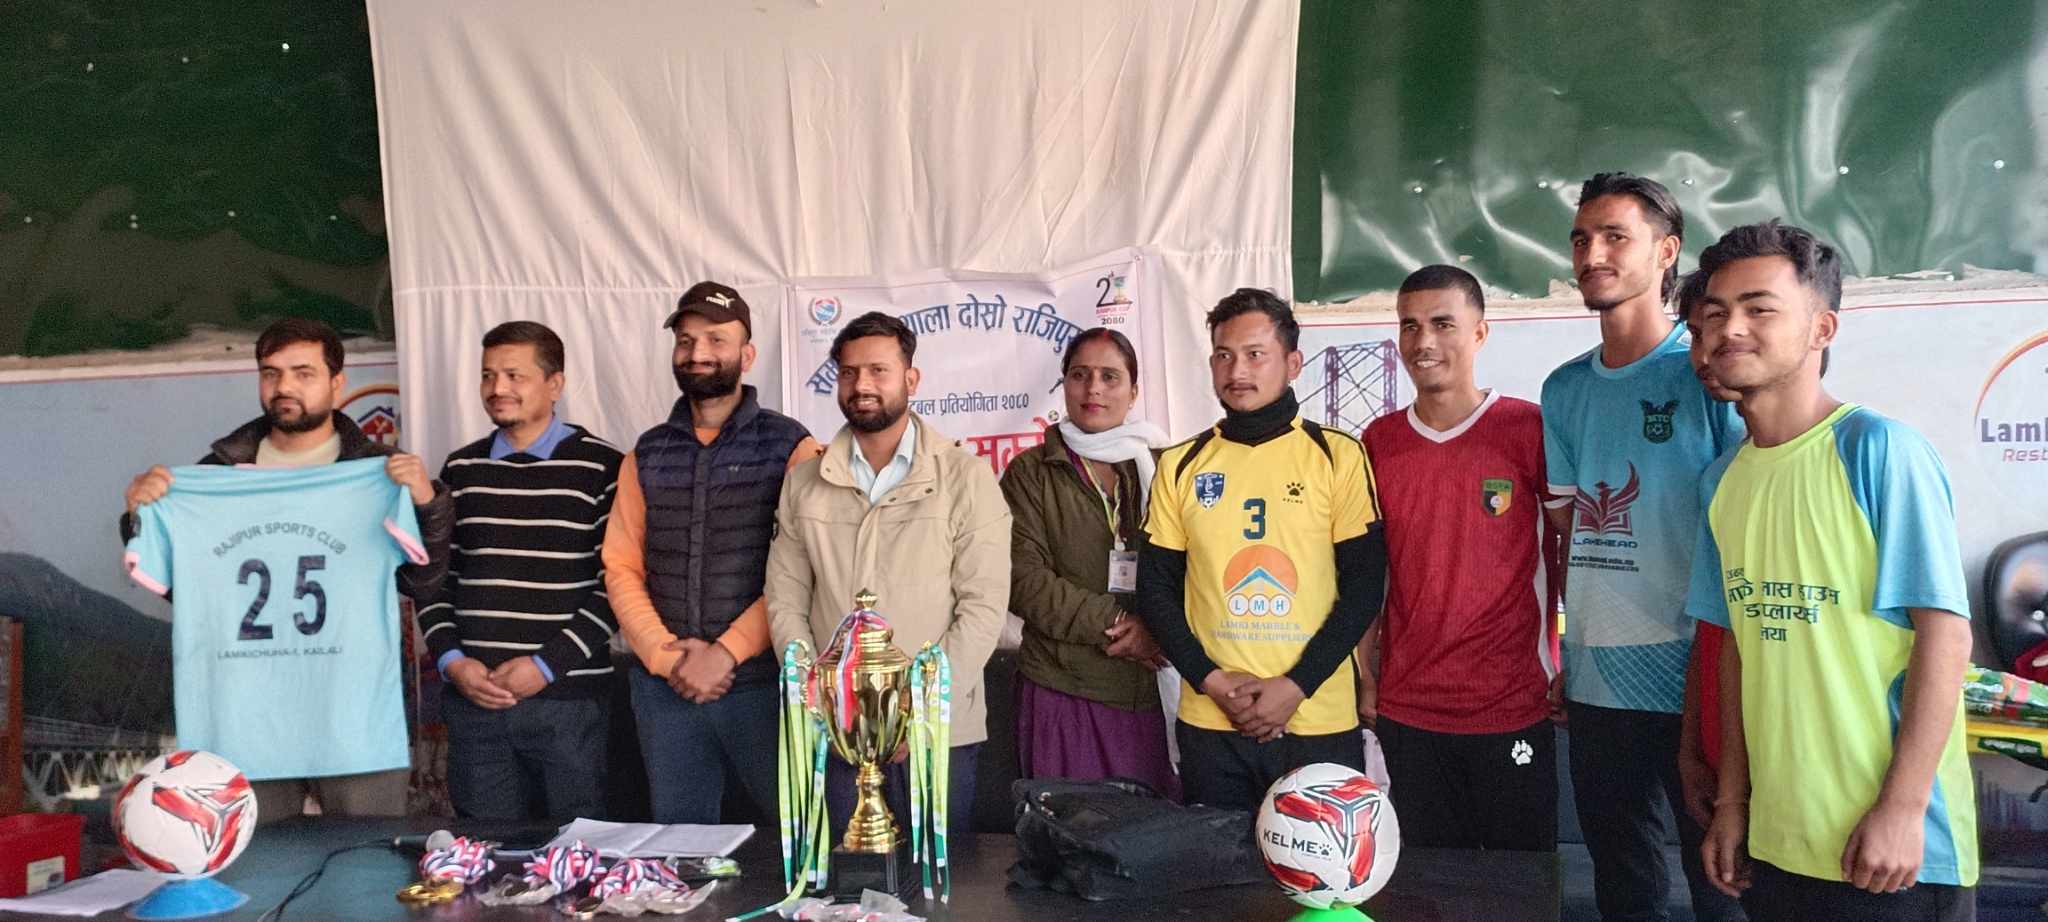 कैलालीमा समता पाठशाला दोस्रो राजिपुर कप फुटबल प्रतियोगिता हुदै